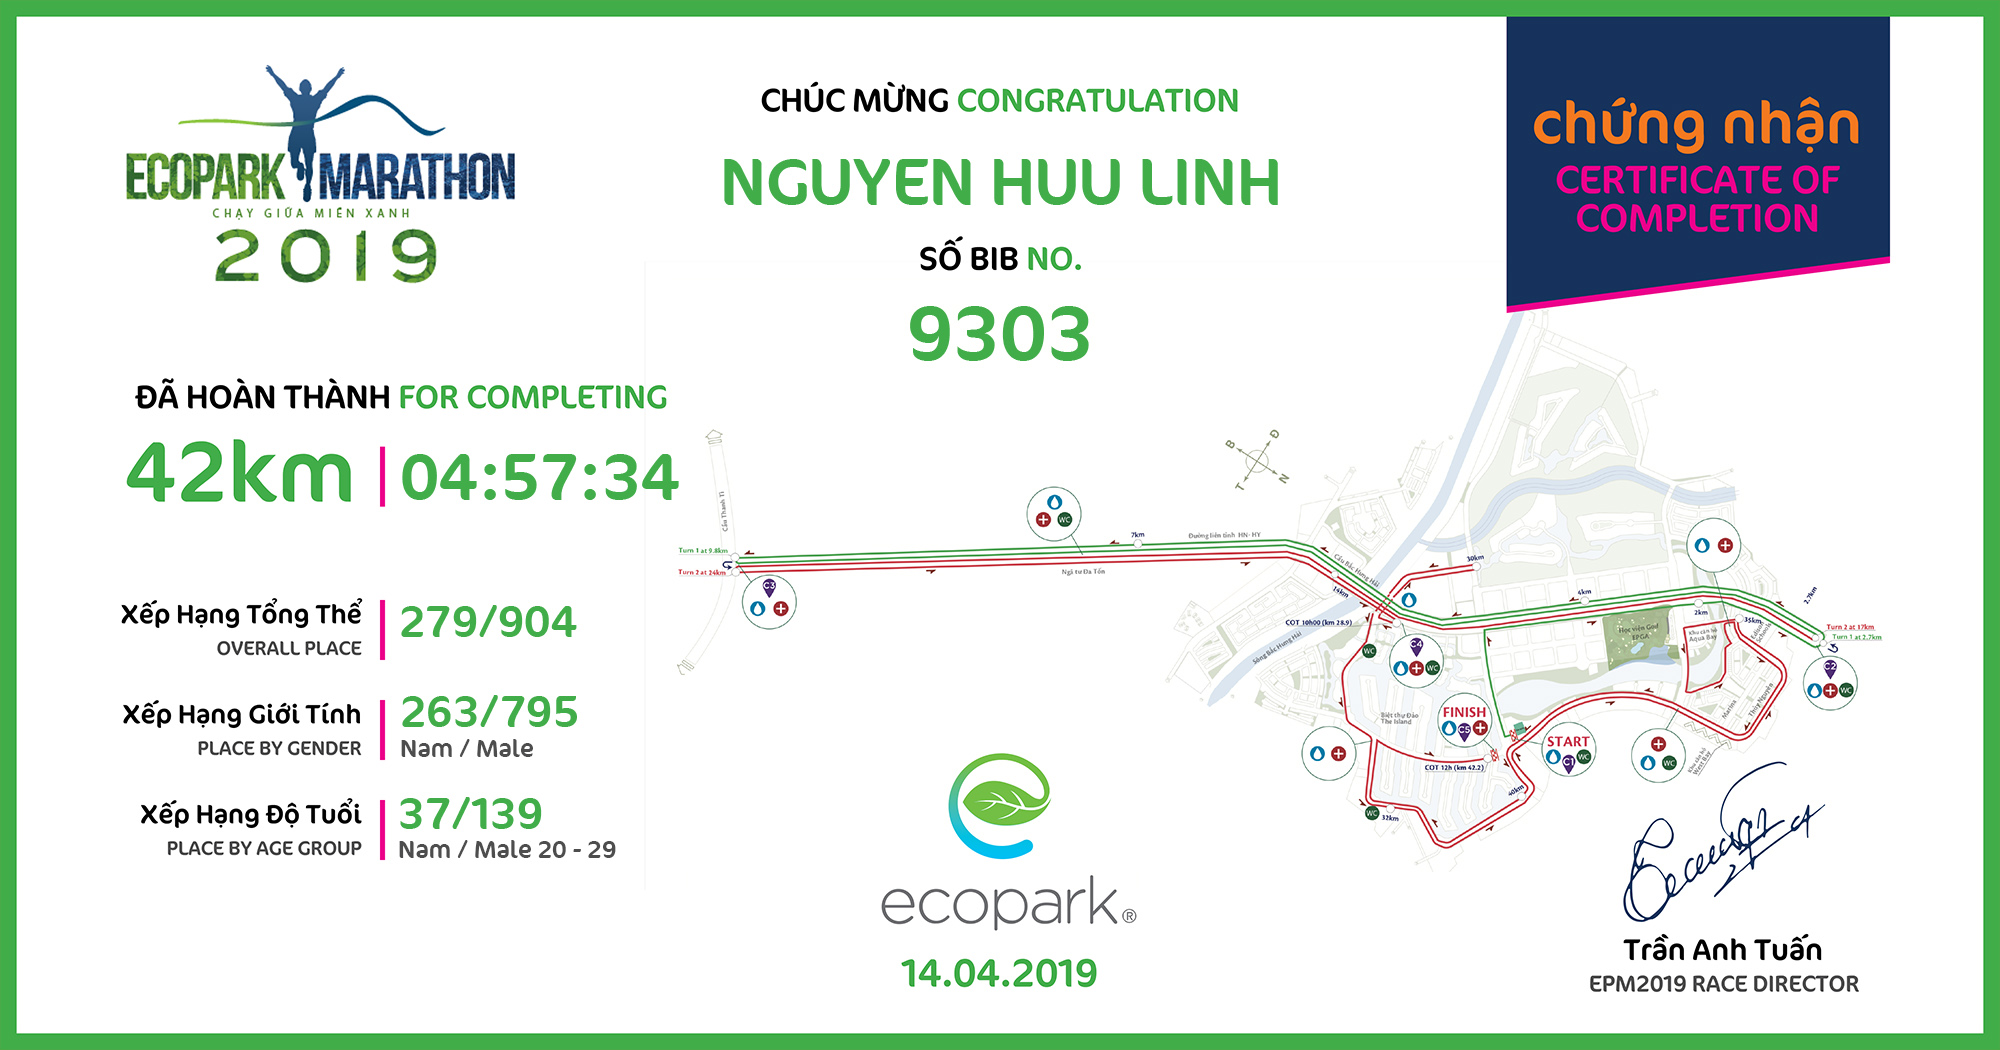 9303 - Nguyen huu linh